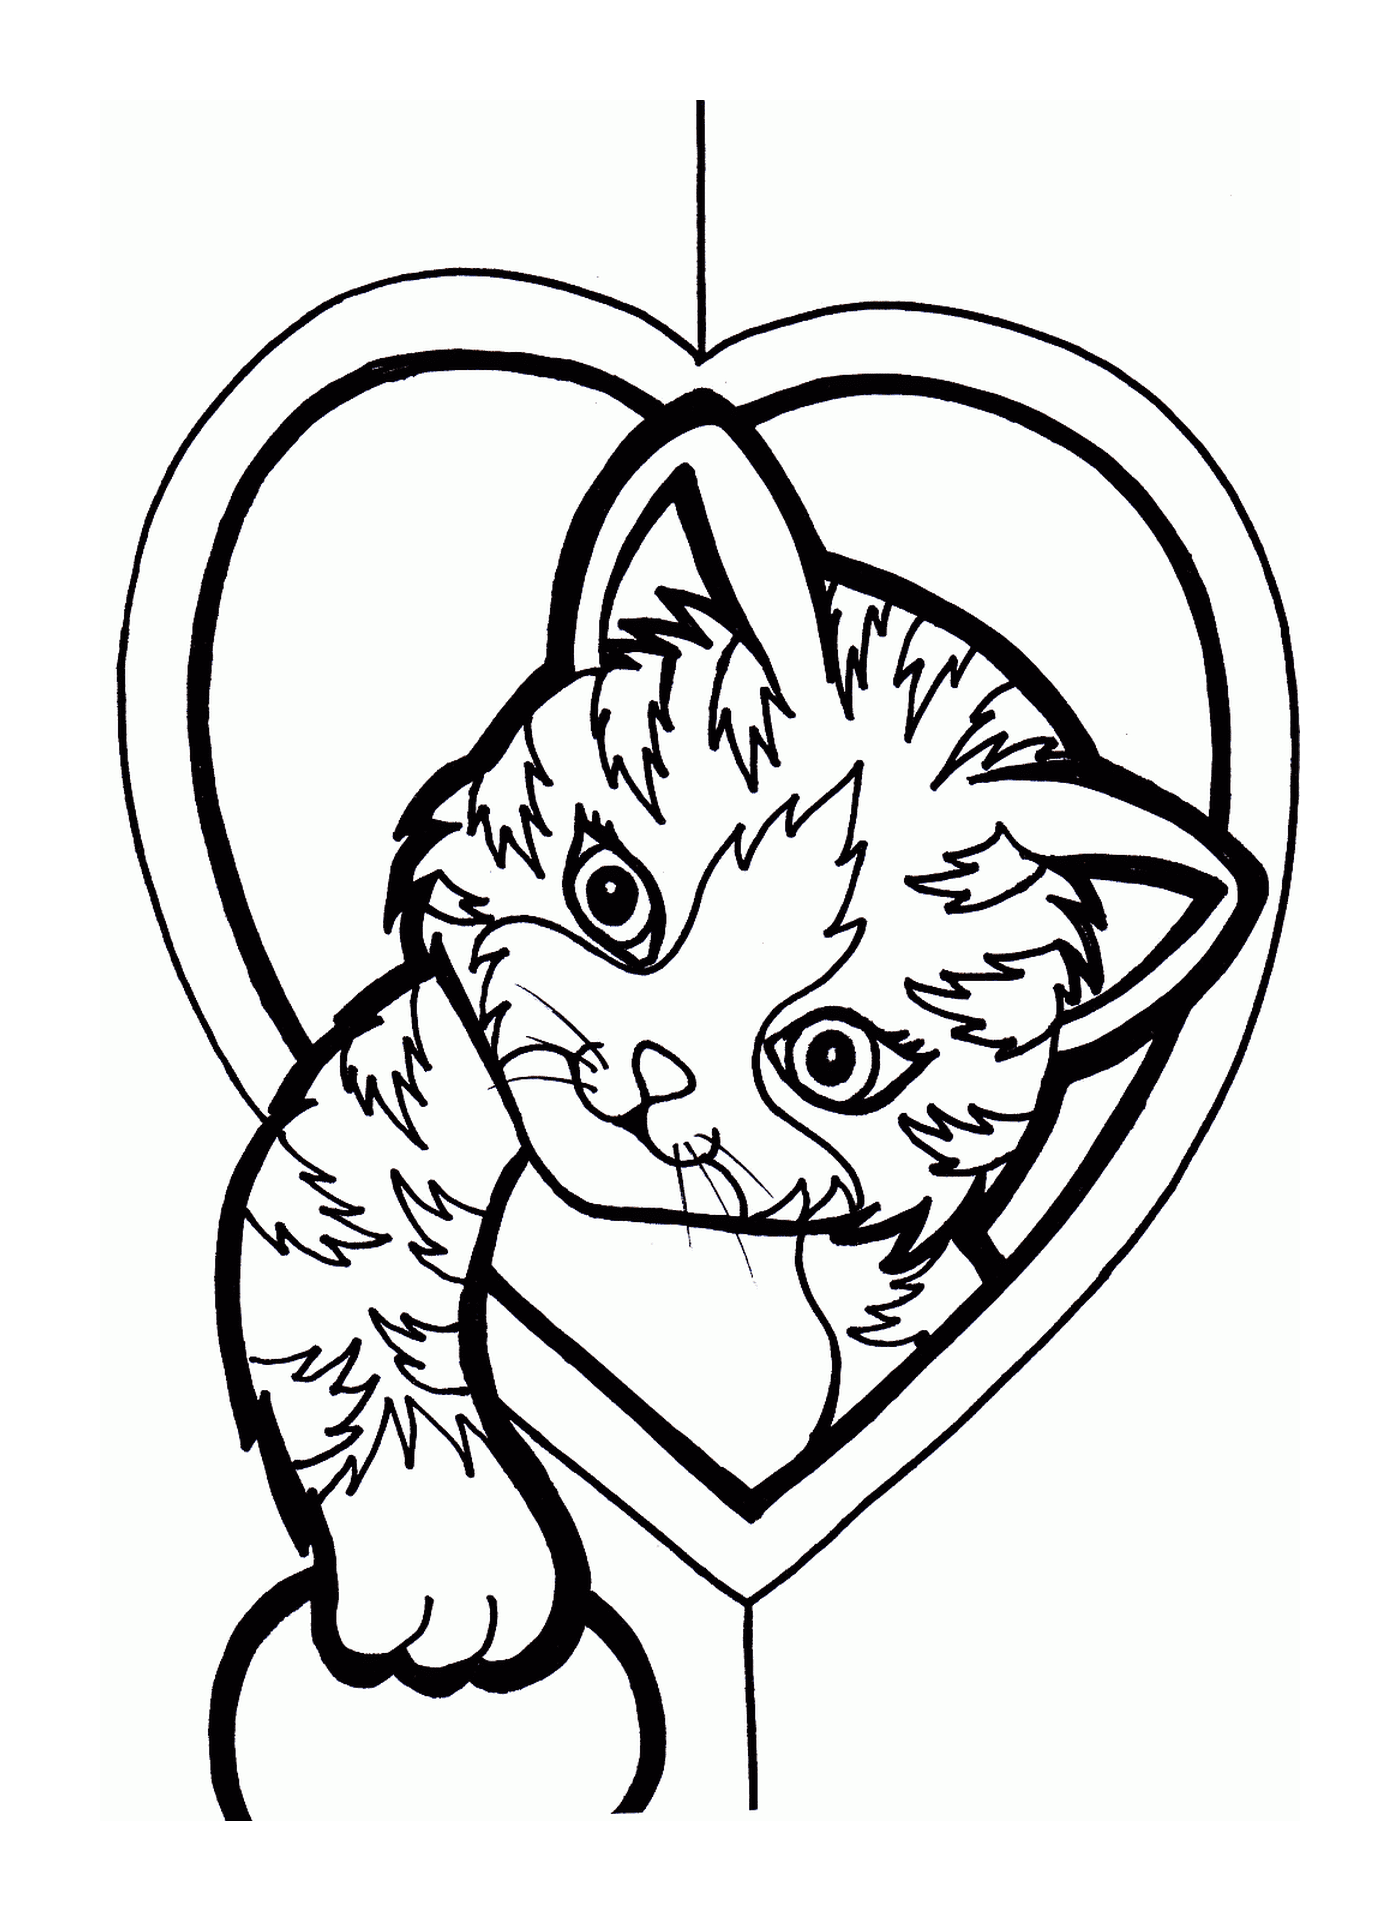   Un chat dans un cœur 